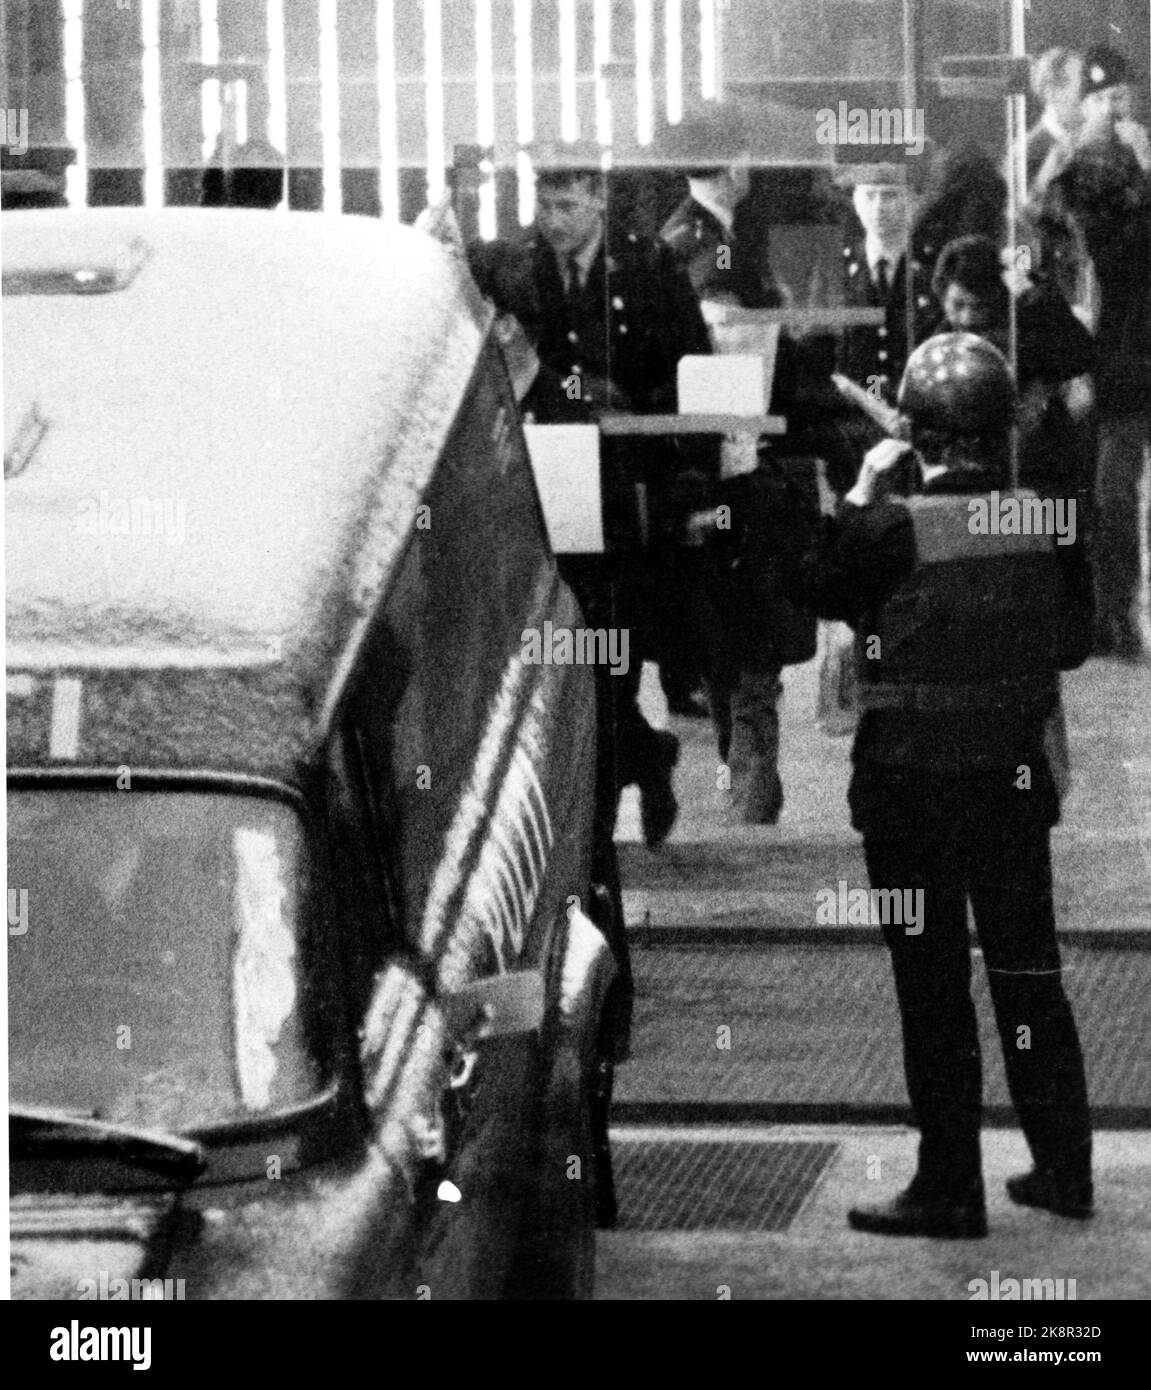 Oslo 19740109. Der Fall Lillehammer - Prozess nach dem Mord an Ahmed Bouchiki in Lillehammer im Jahr 1973. Sechs israelische Agenten werden wegen Beteiligung an vorsätzlichem Mord angeklagt. Die vier männlichen Angeklagten werden nach einem Gerichtsverfahren zum Polizeiauto gebracht. Foto NTB / NTB Stockfoto